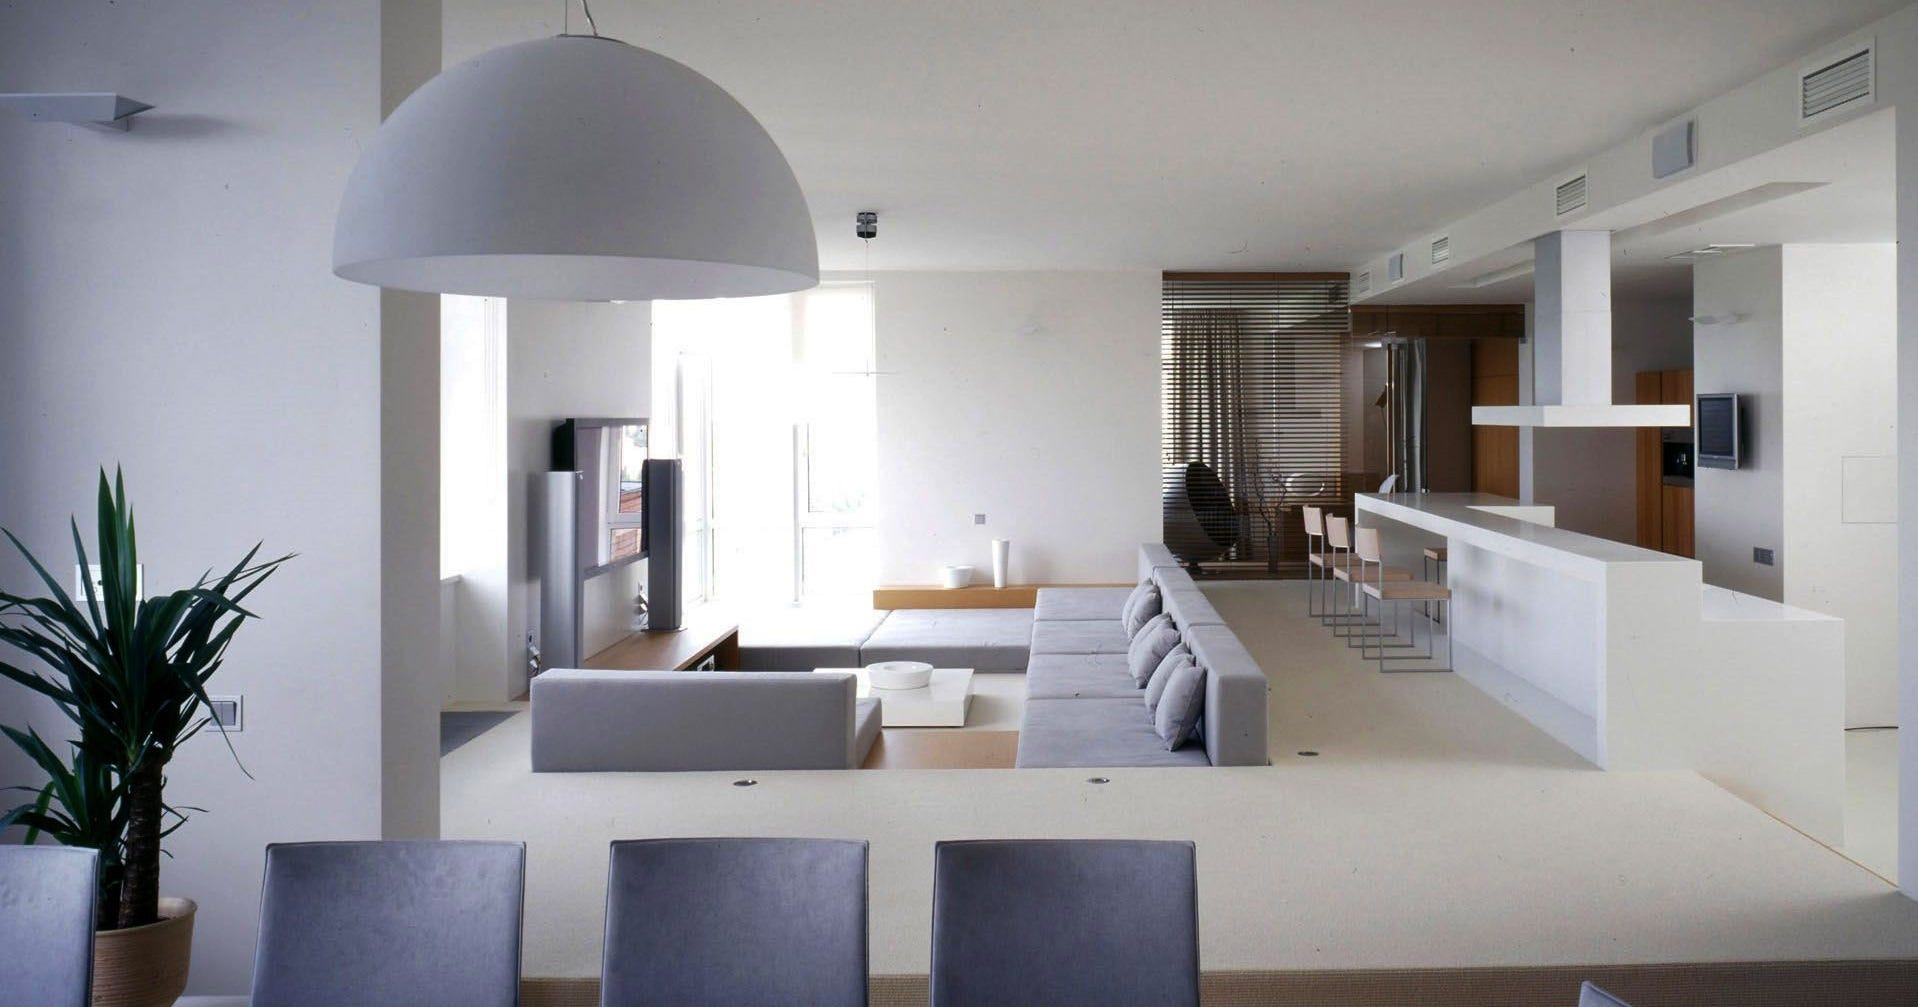 White As A Base For Home Interior Design Sakata Gintoki